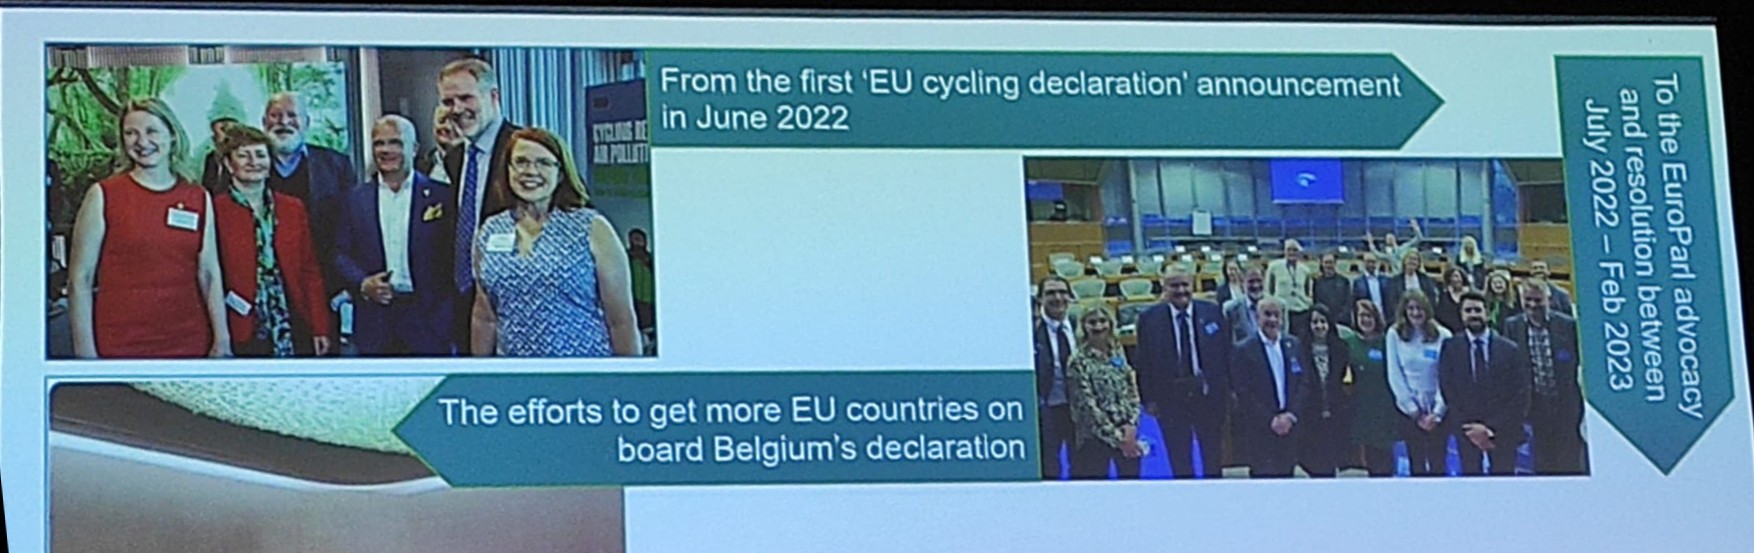 Folie eines Vortrags zu EU Cycling Declaration